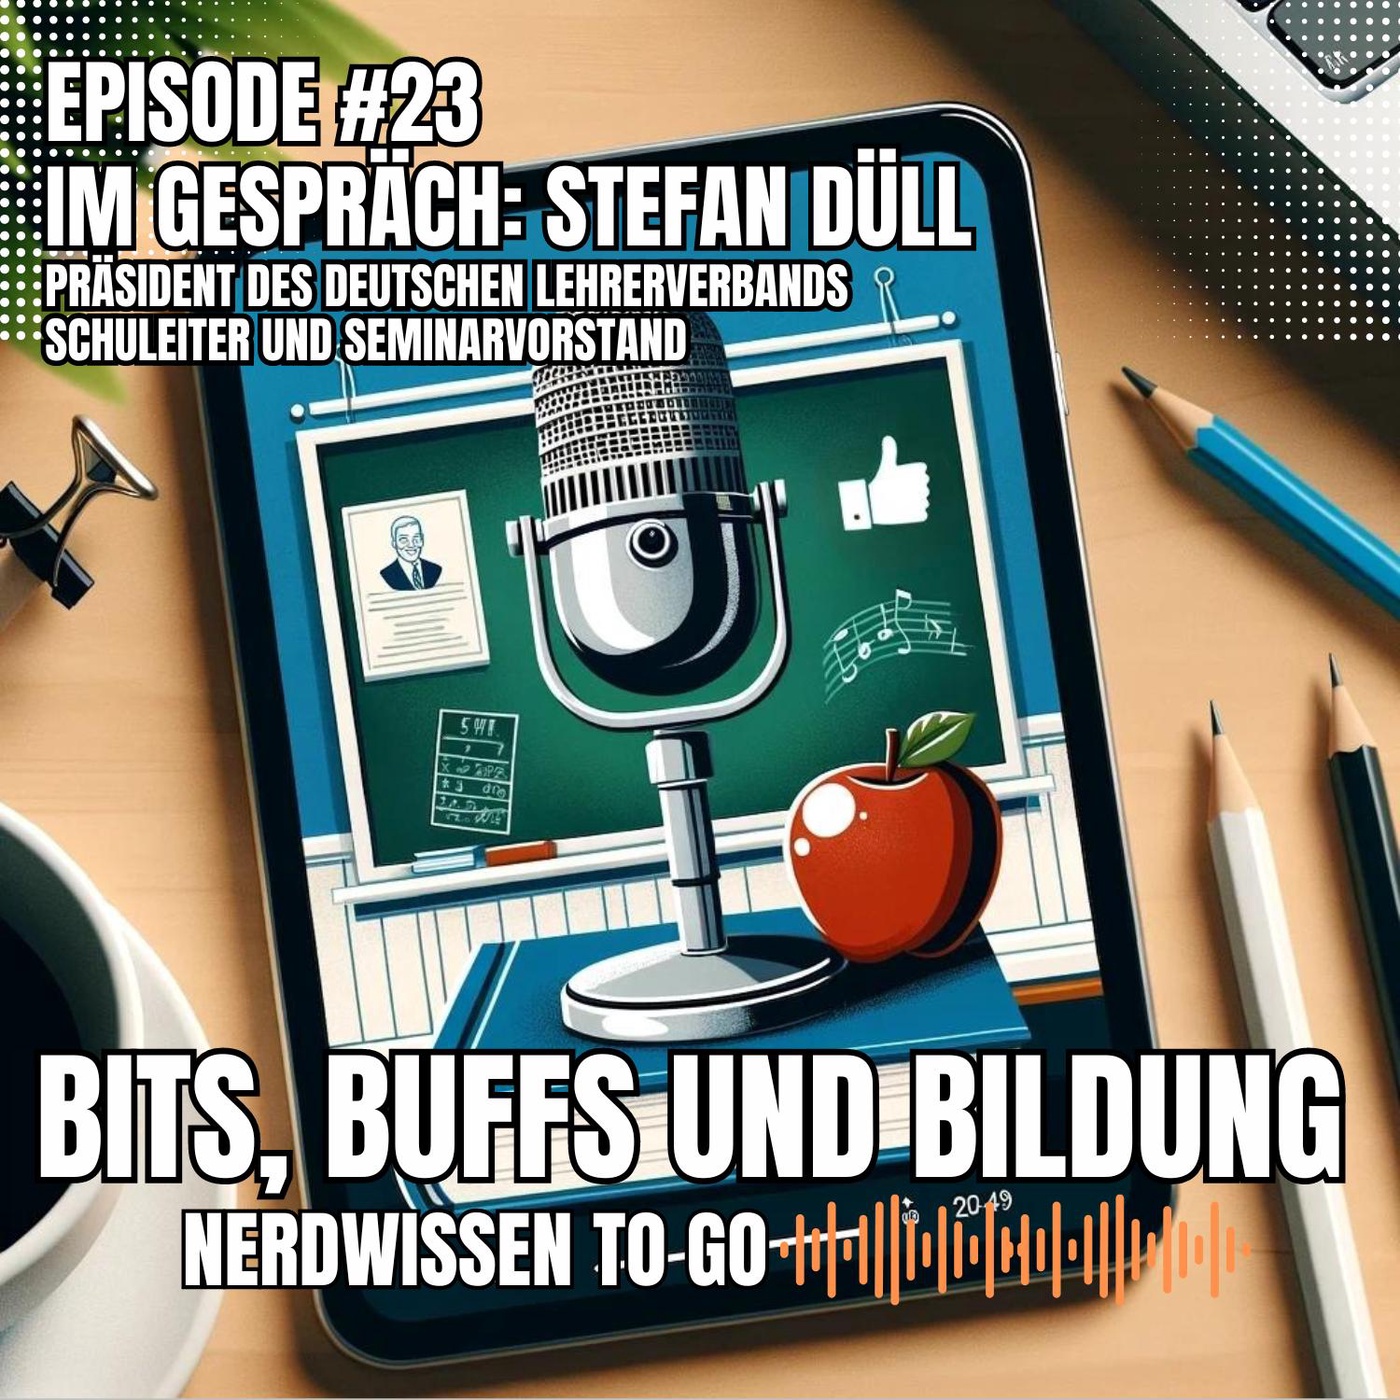 #23 Episode 23 – IM GESPRÄCH: Stefan Düll - Präsident des Deutschen Lehrerverbands